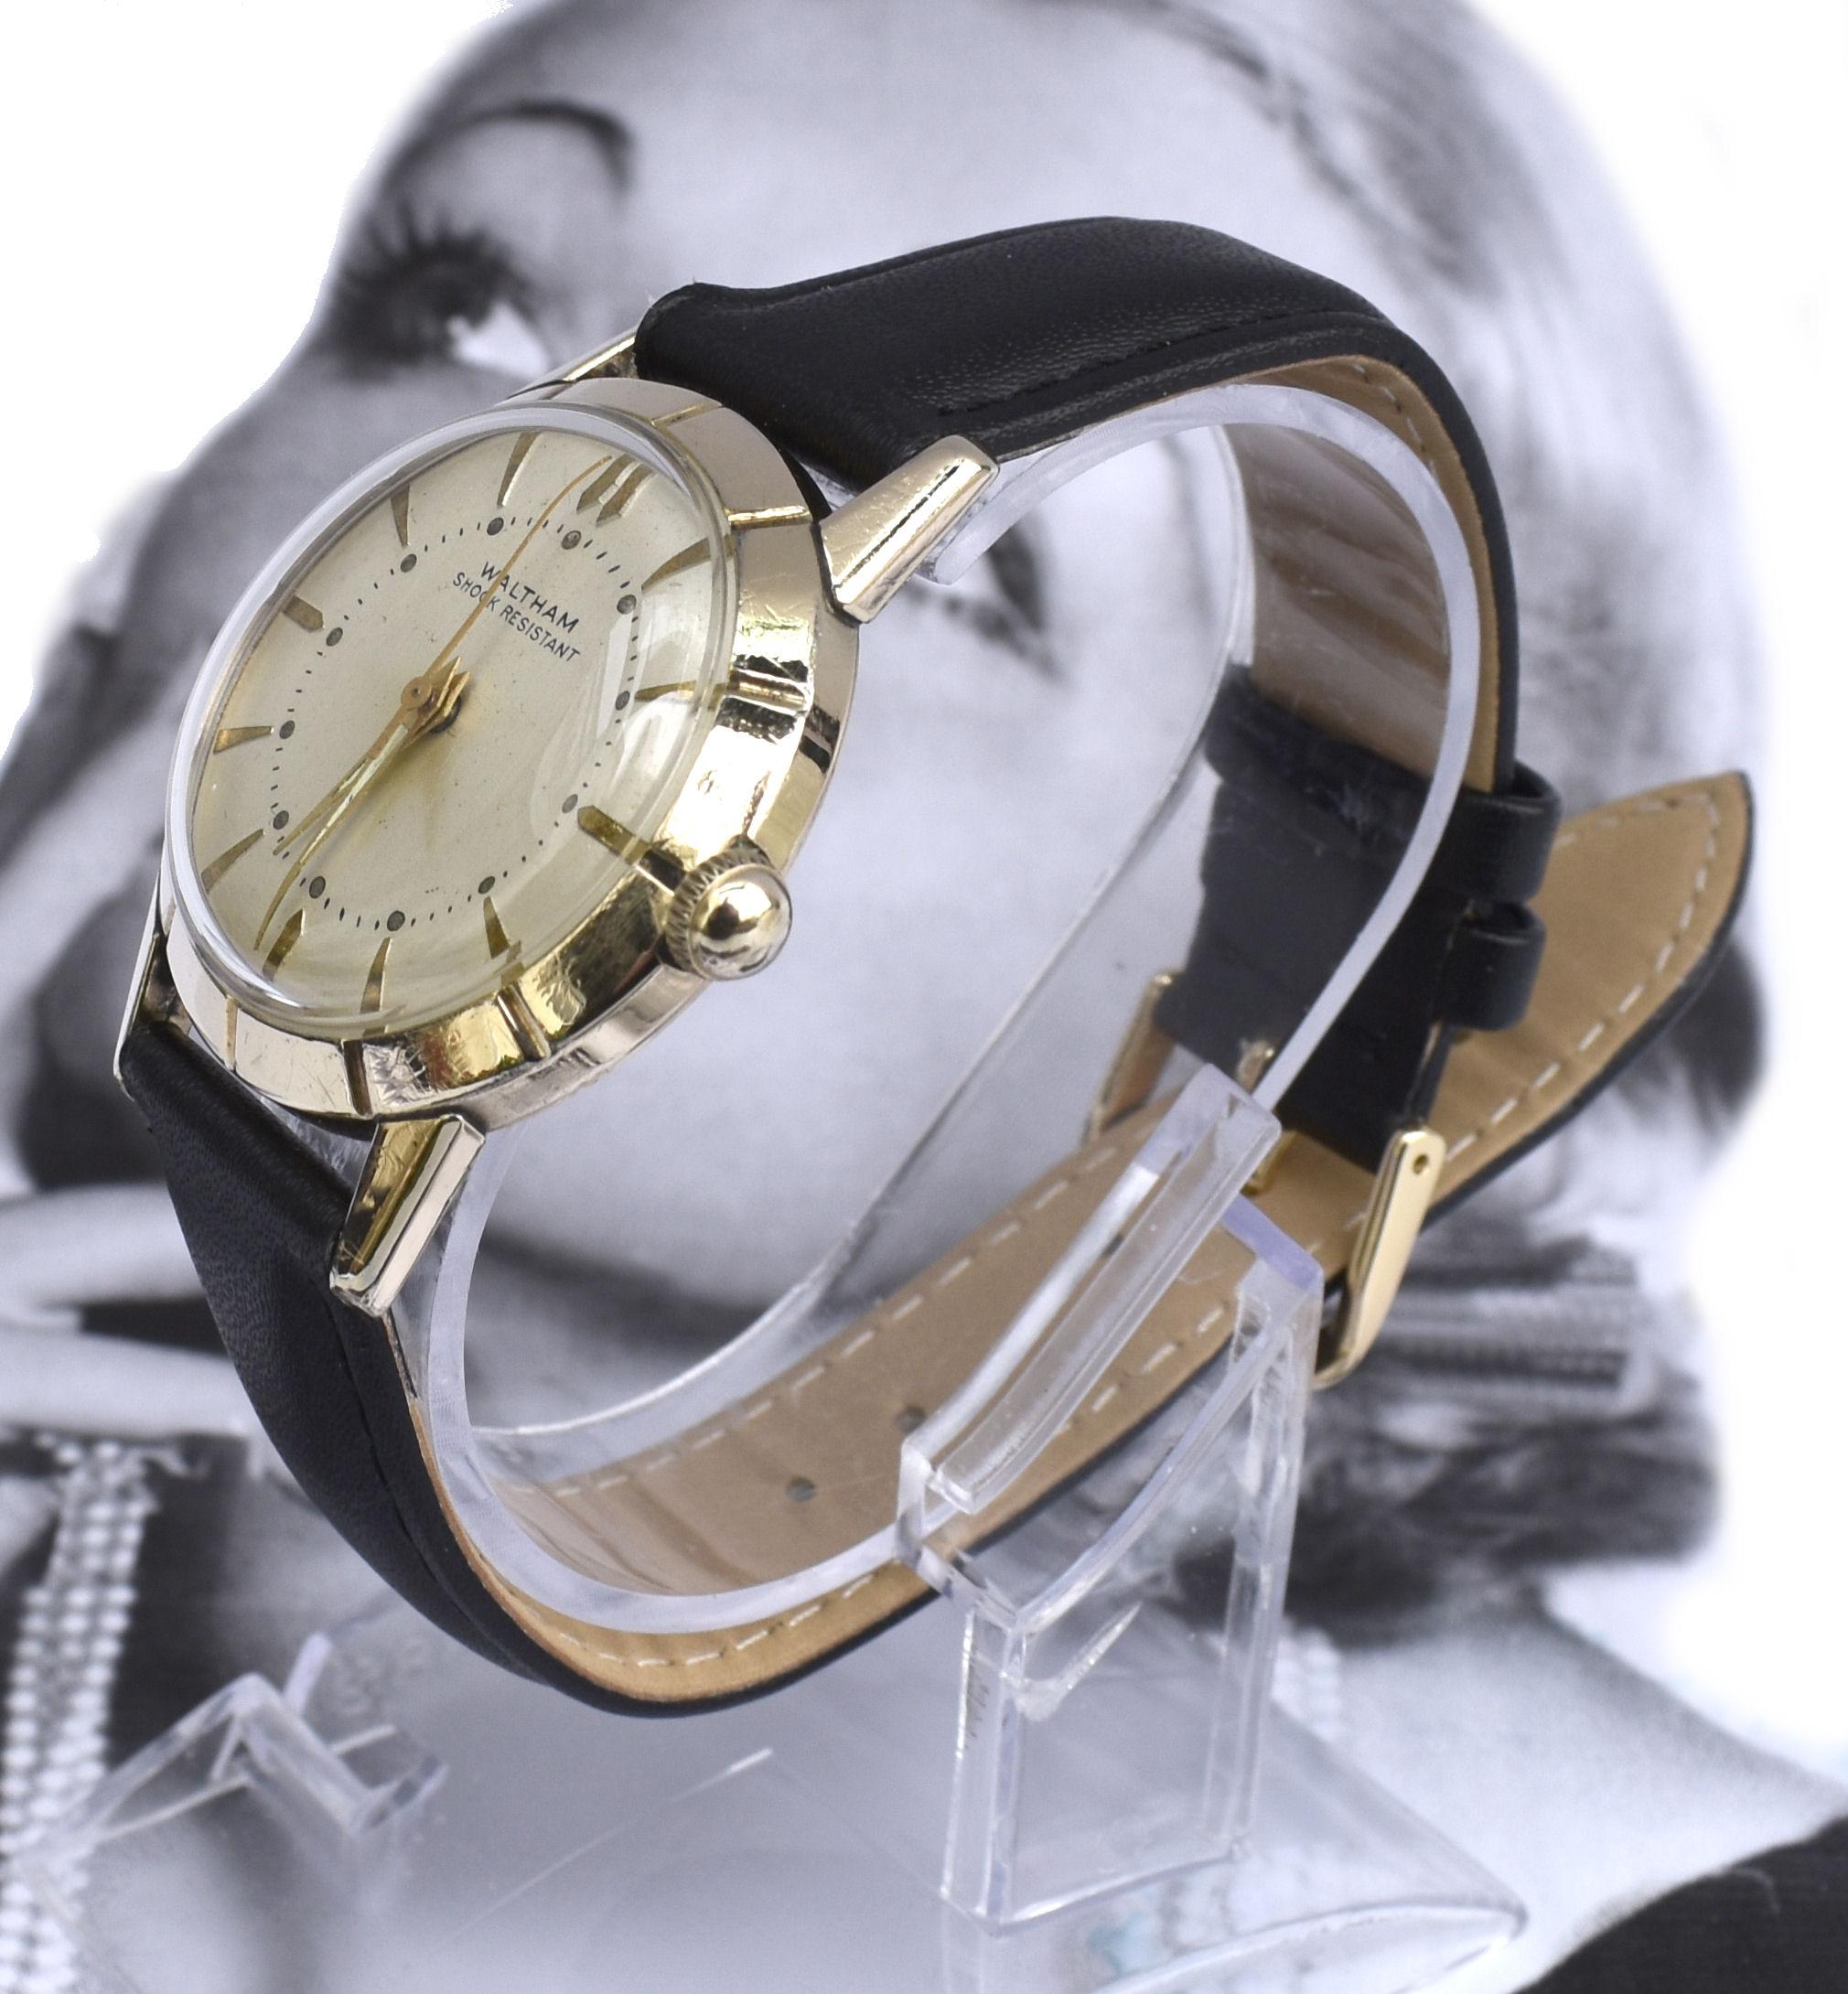 waltham wrist watch